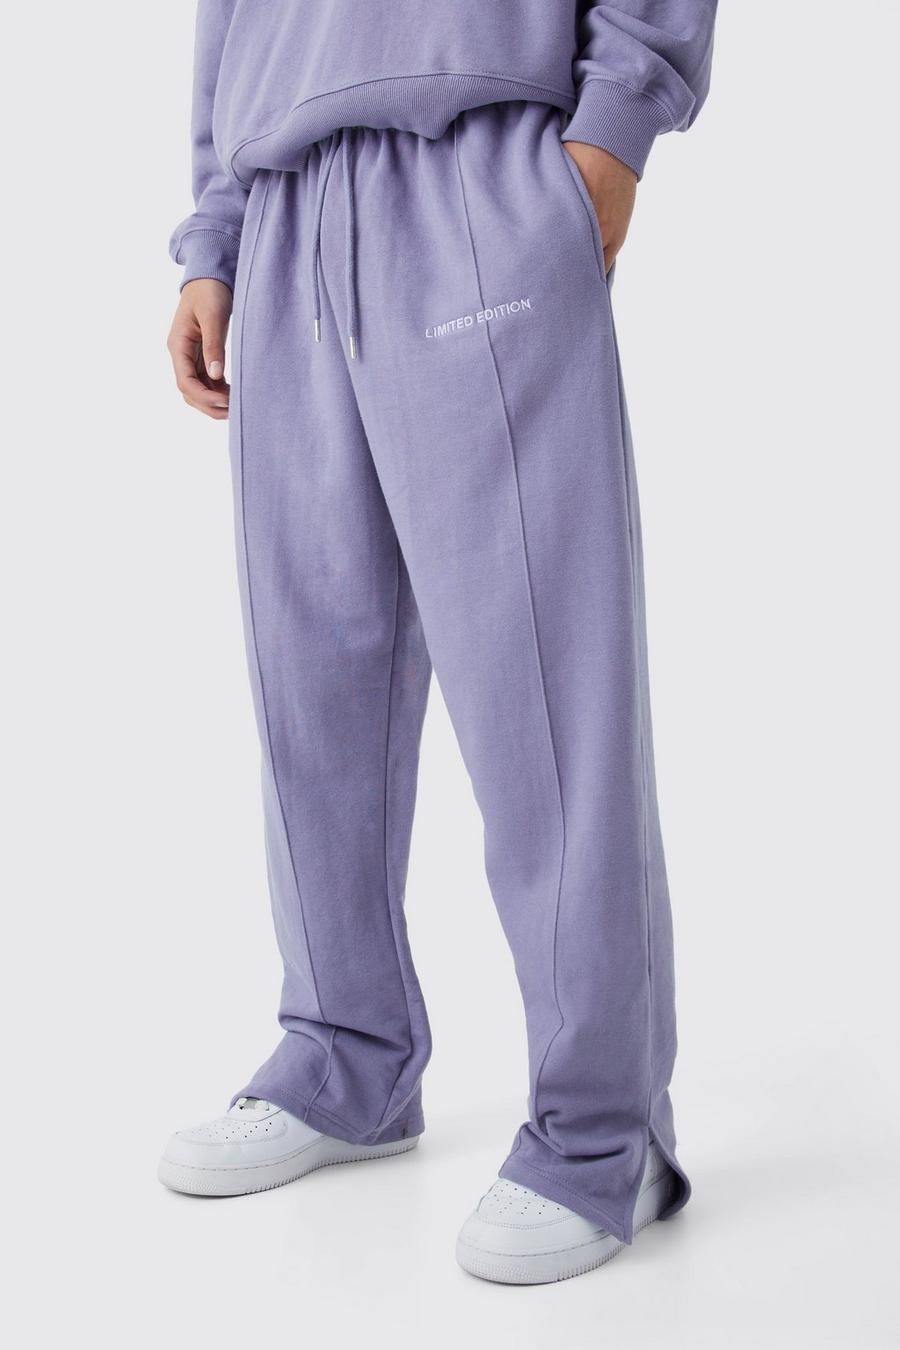 Pantaloni tuta rilassati pesanti con spacco sul fondo, Lavender